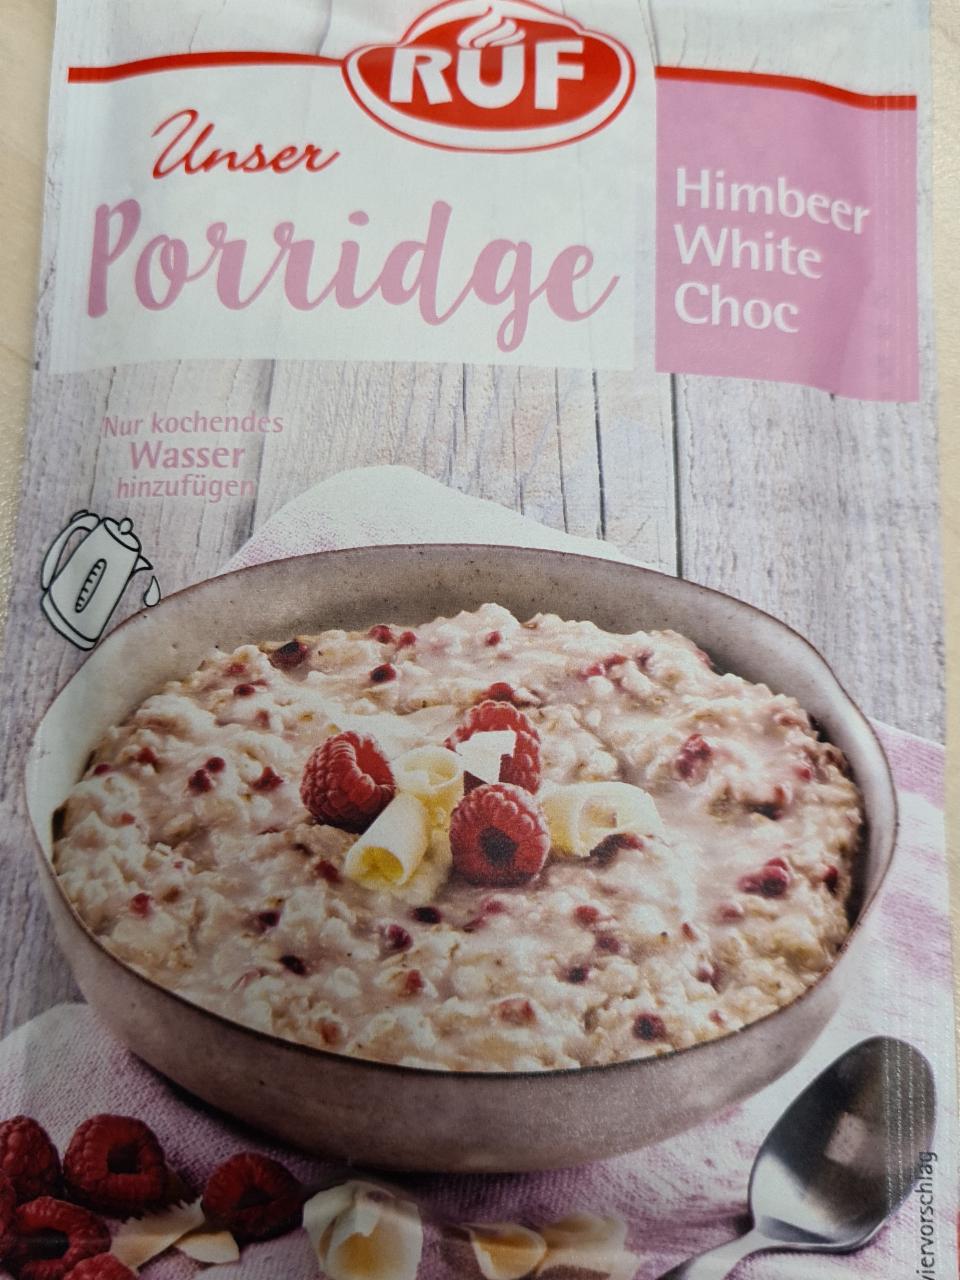 Фото - Unser Porridge Himbeer White Choc RUF